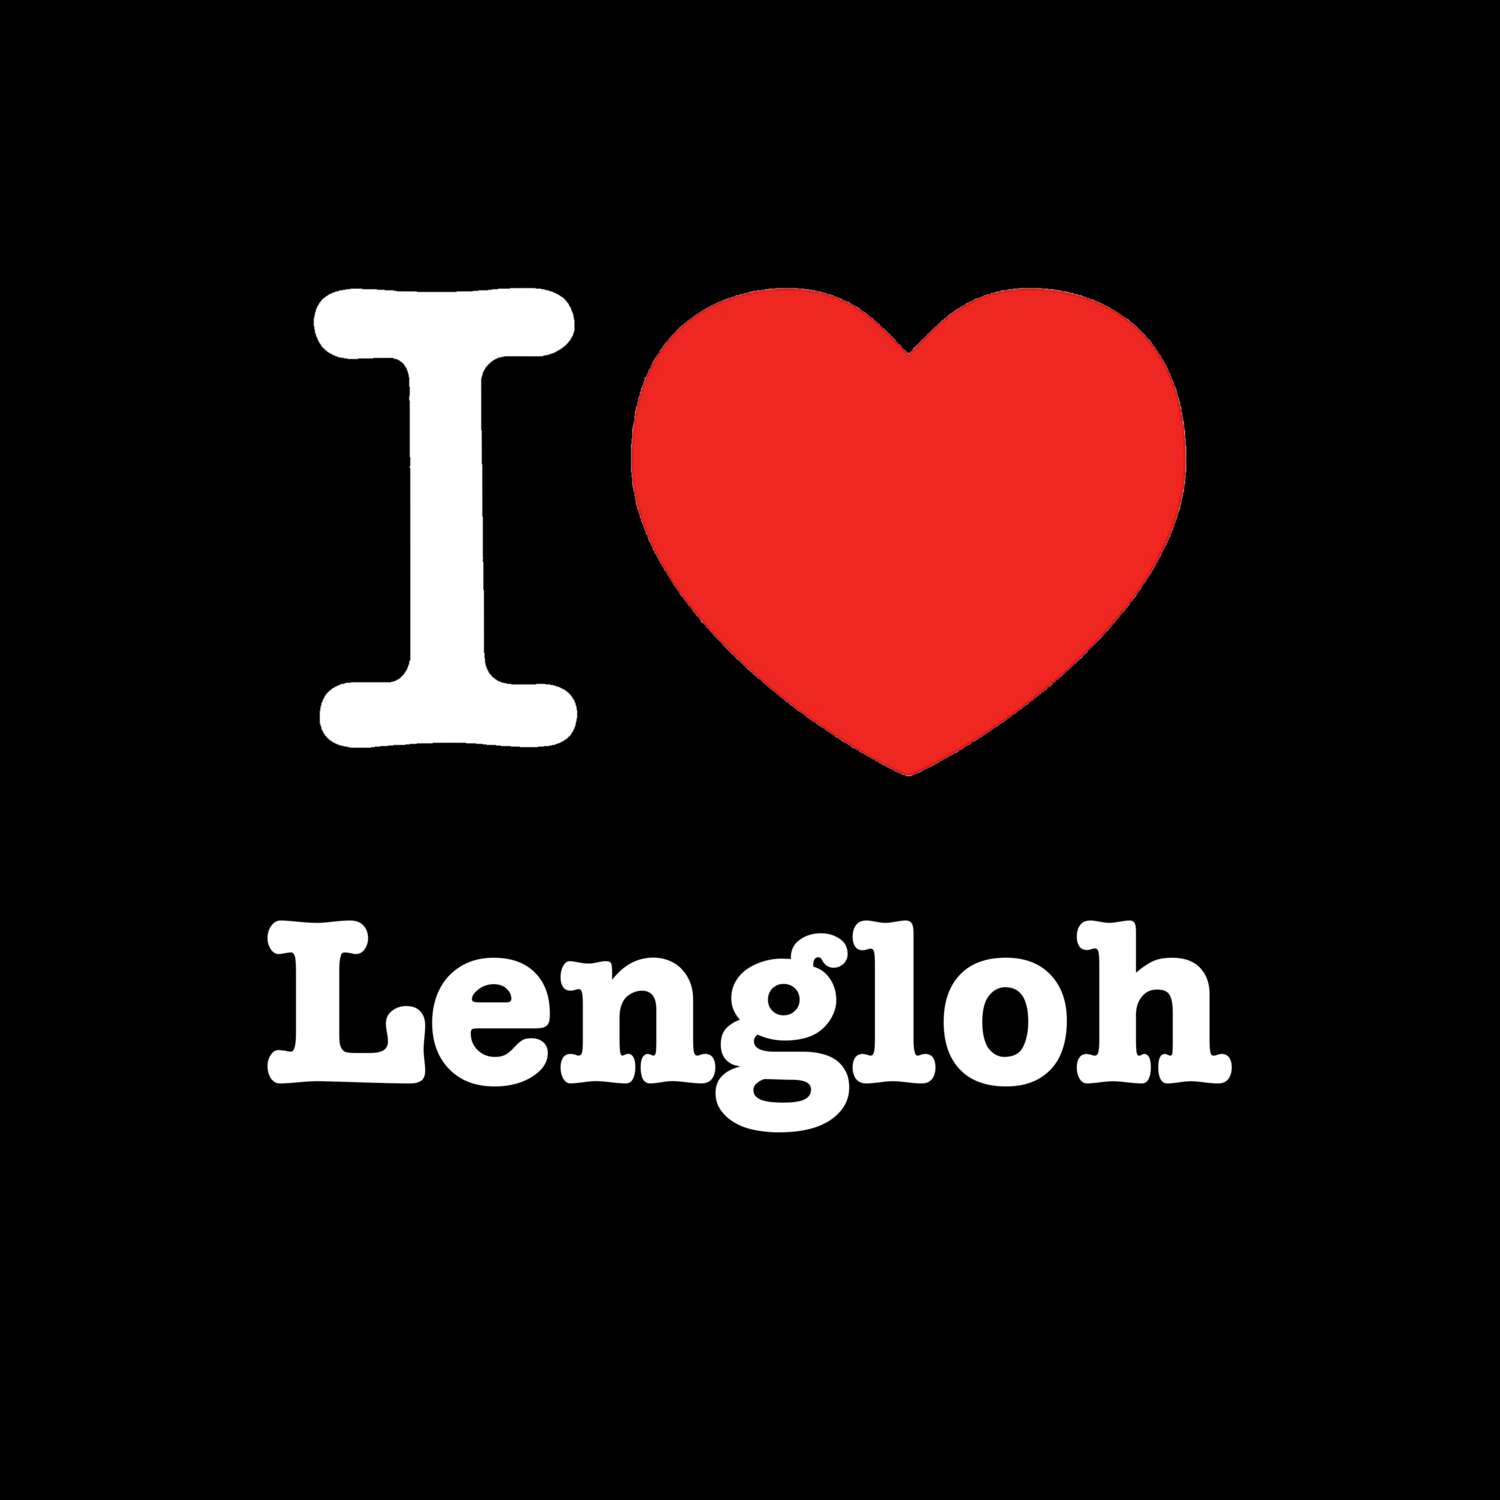 Lengloh T-Shirt »I love«